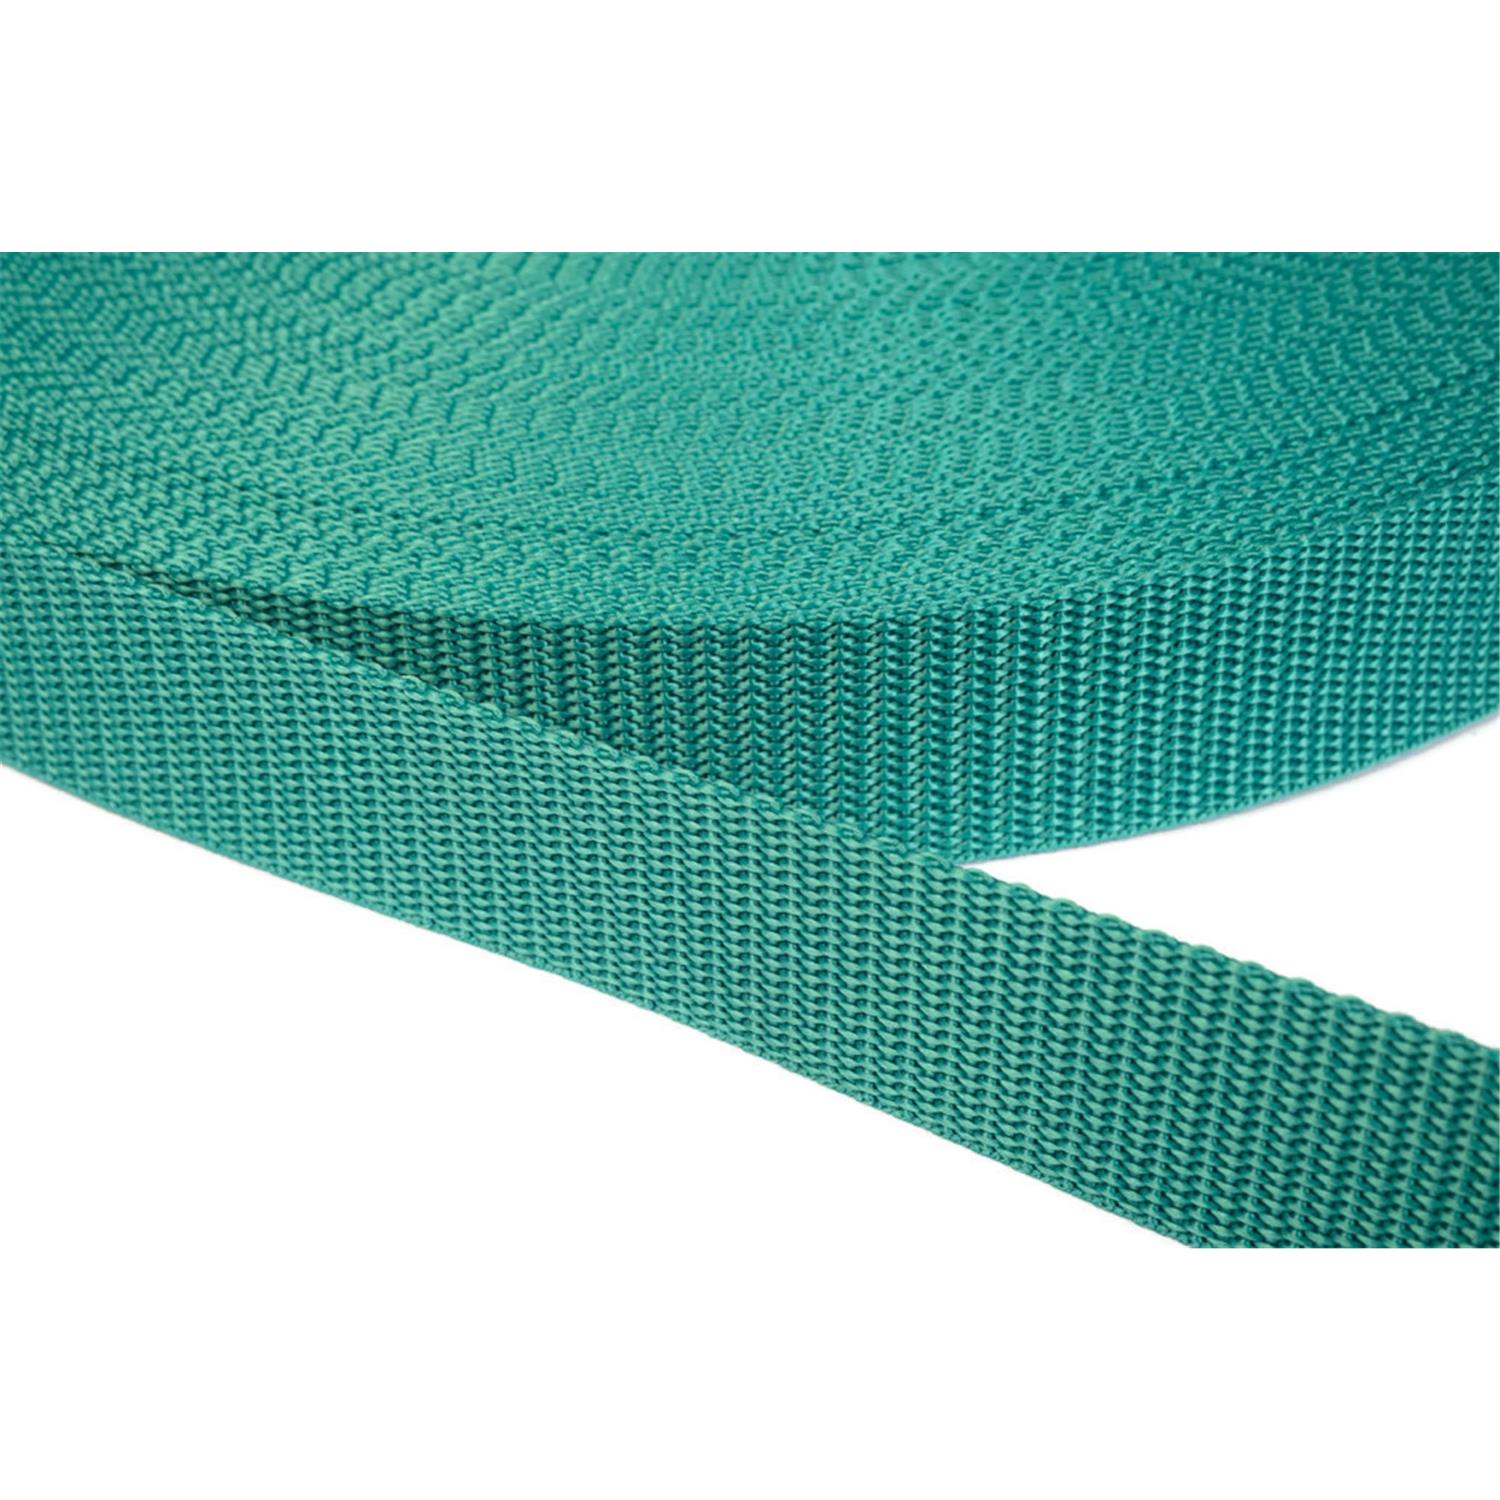 Gurtband 40mm breit aus Polypropylen in 41 Farben 31 - smaragdgrün 6 Meter